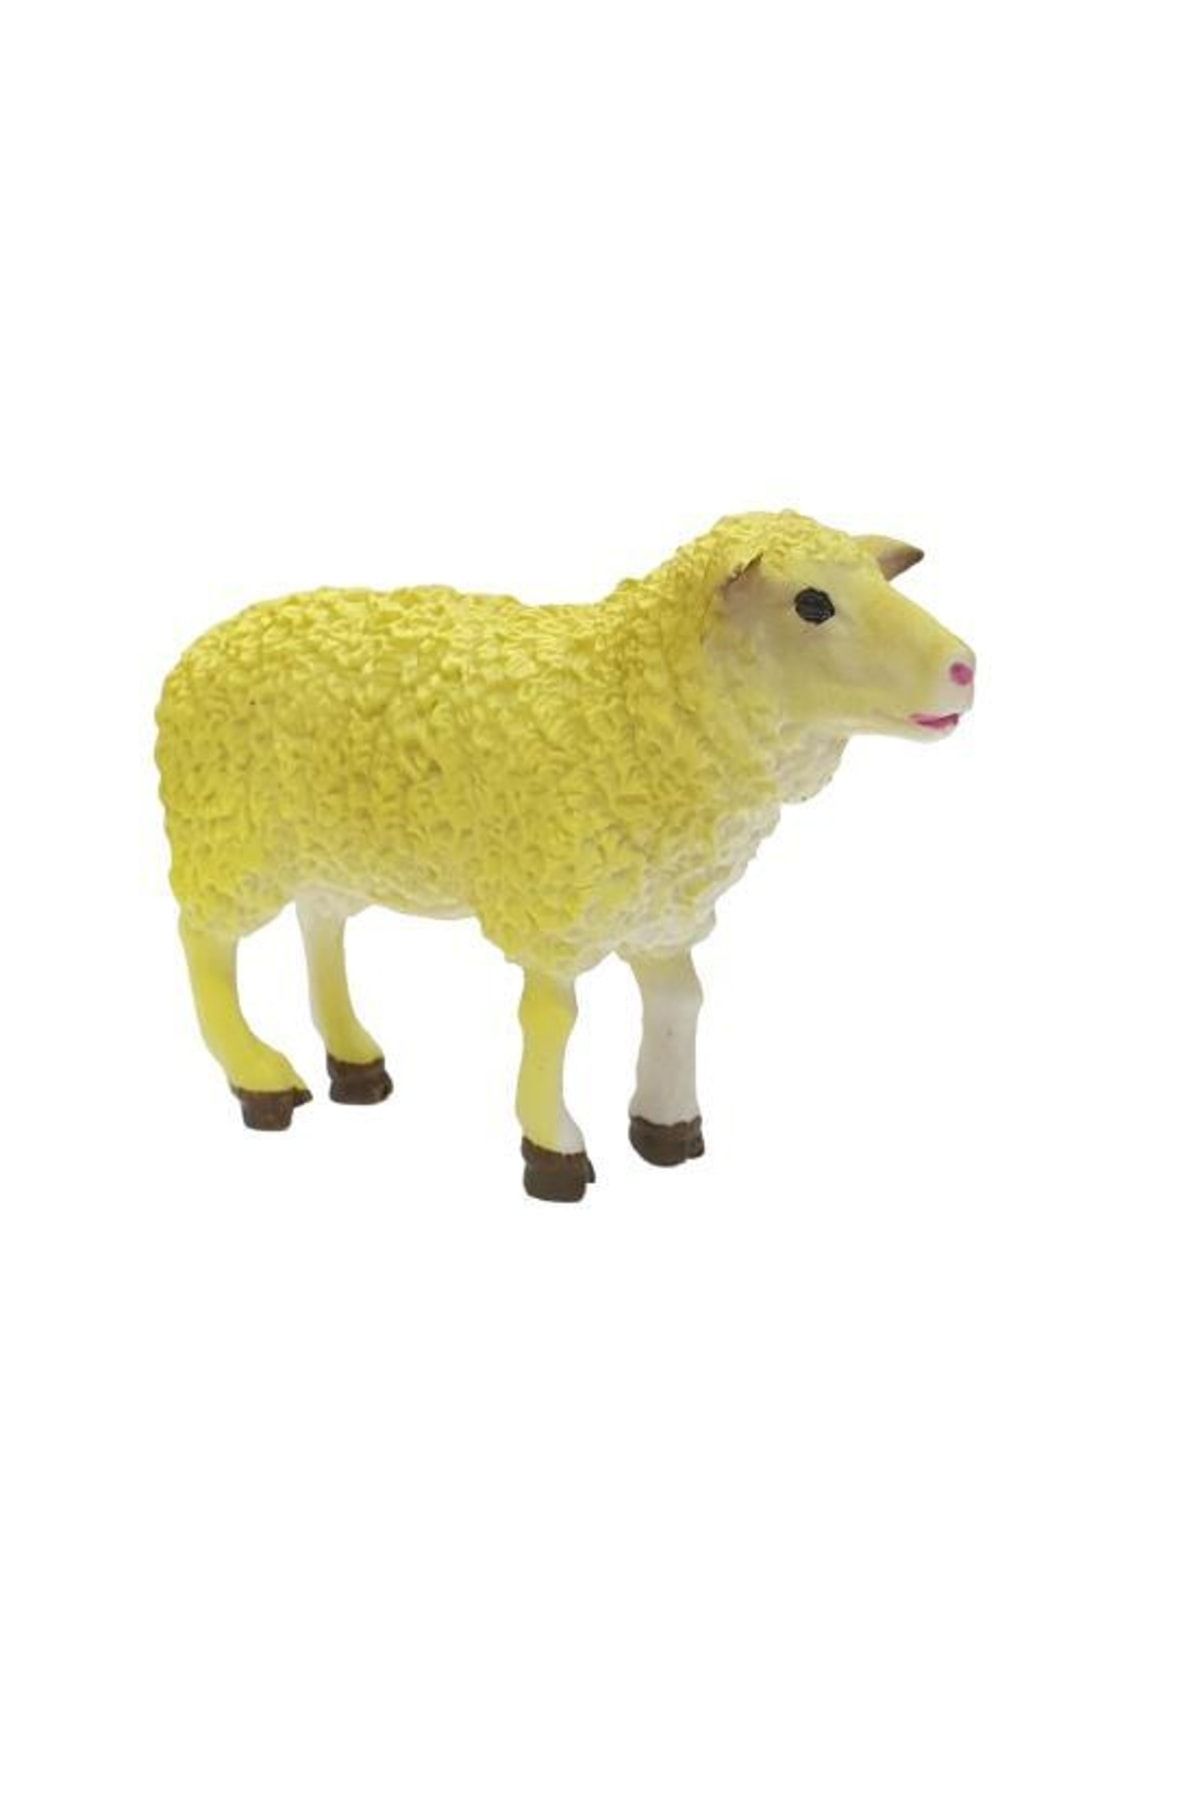 Vardem Çiftlik Hayvanları - Koyun Figür - Q9899-195-koyun